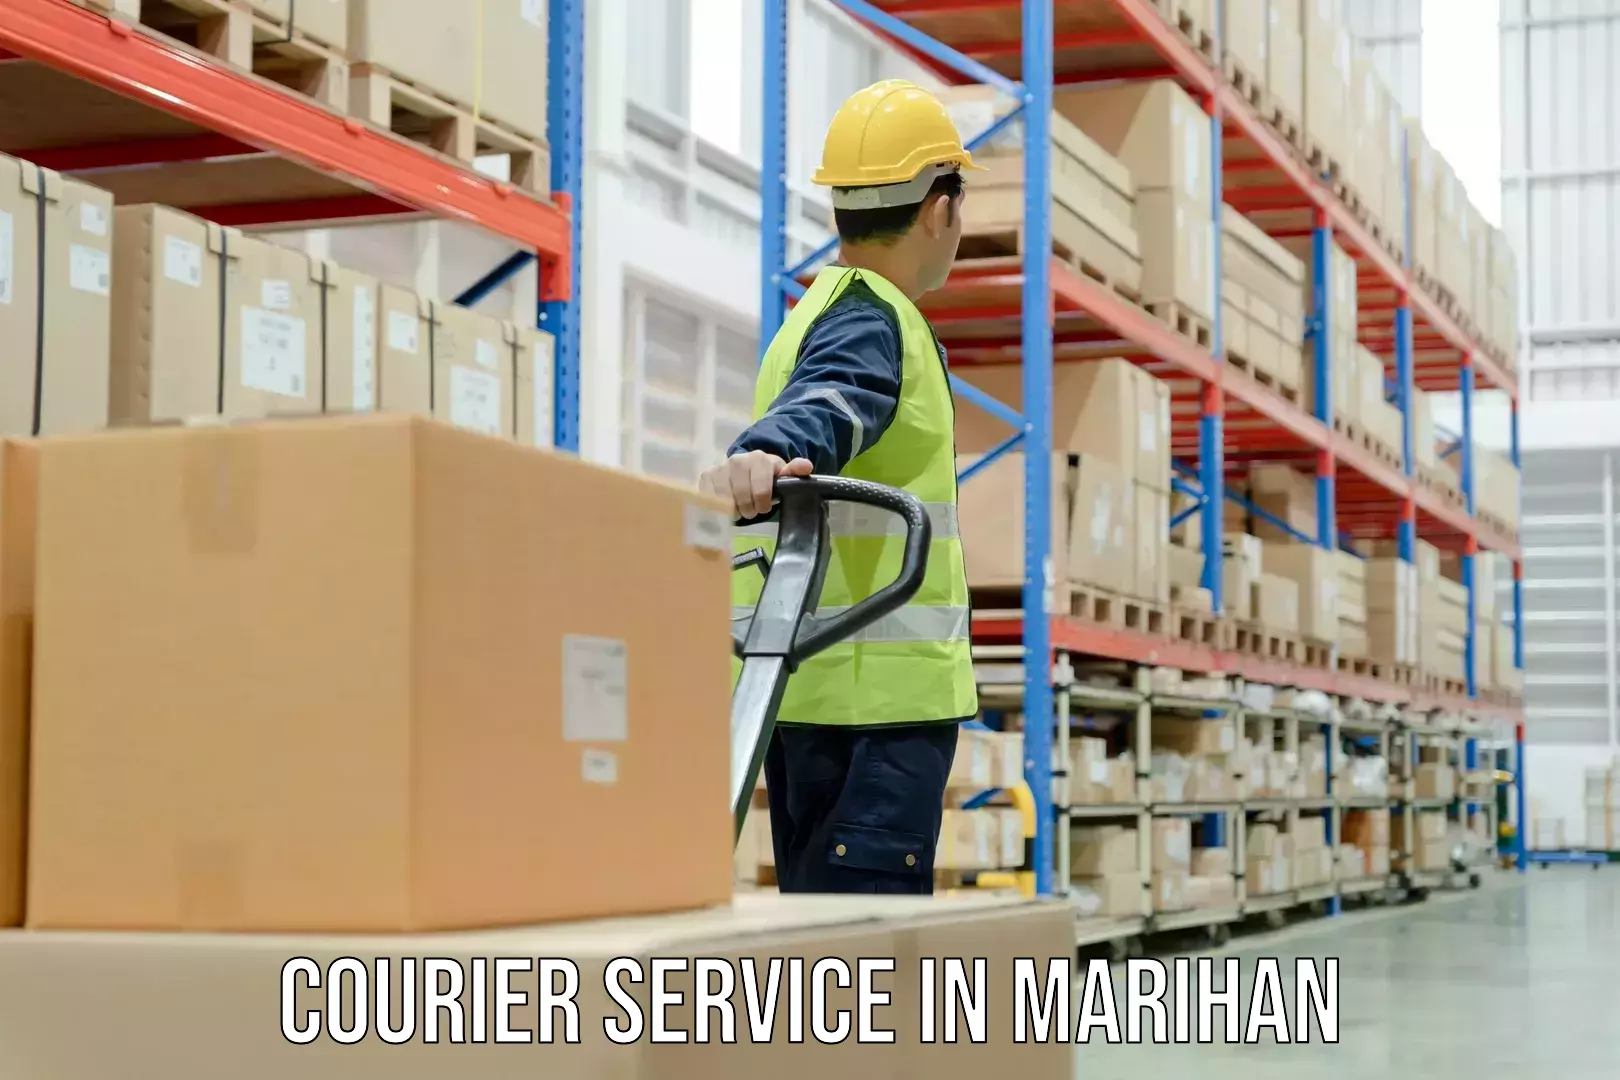 Tech-enabled shipping in Marihan